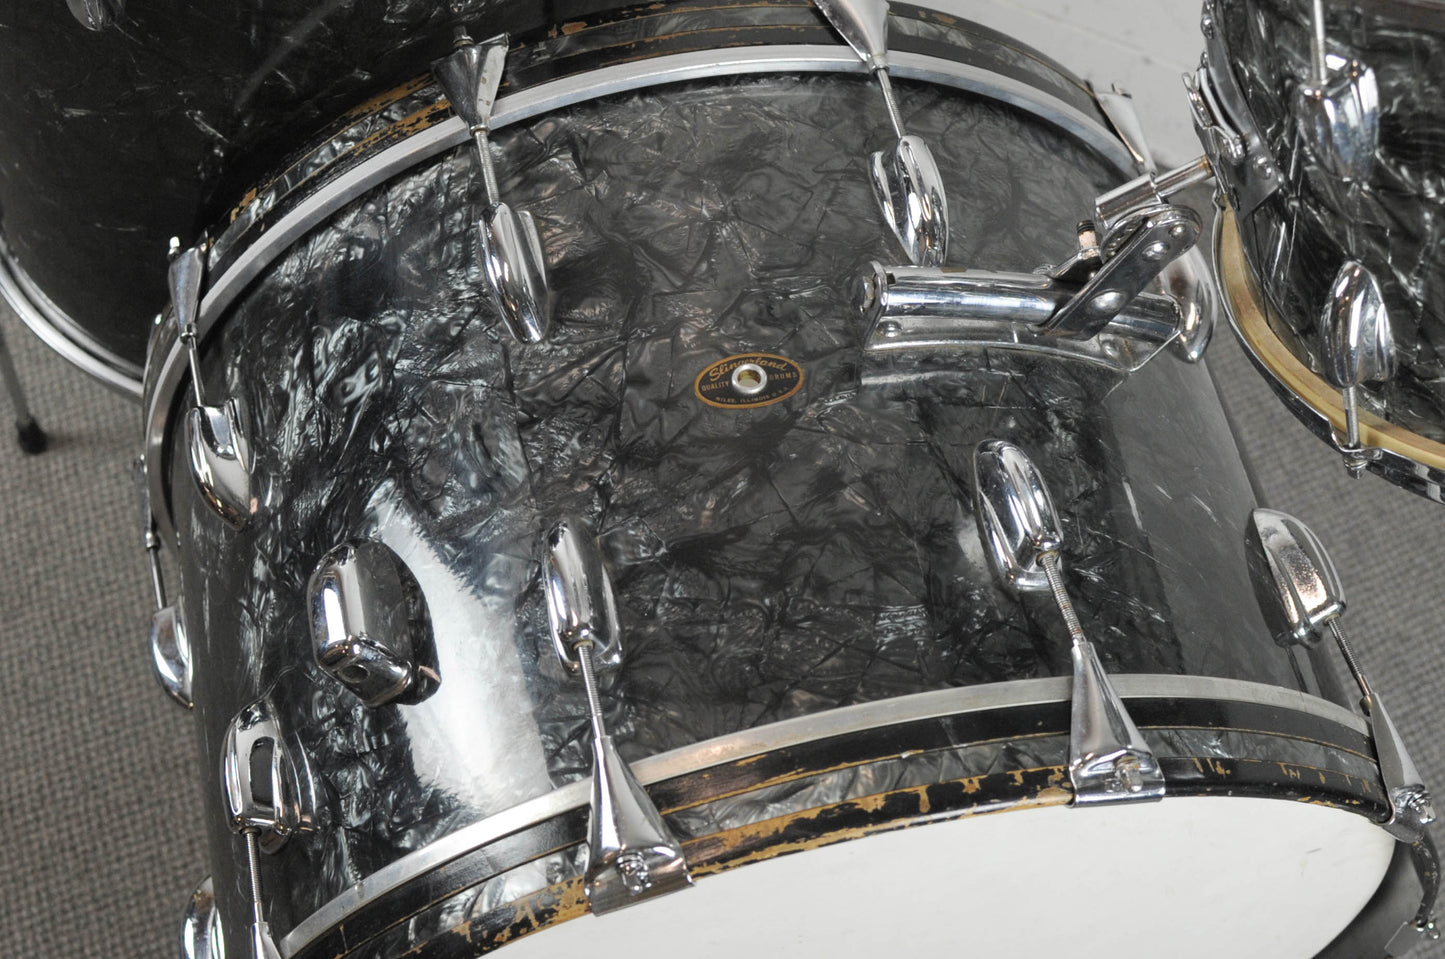 1961 Slingerland Gene Krupa Deluxe Black Diamond Pearl Drum Set